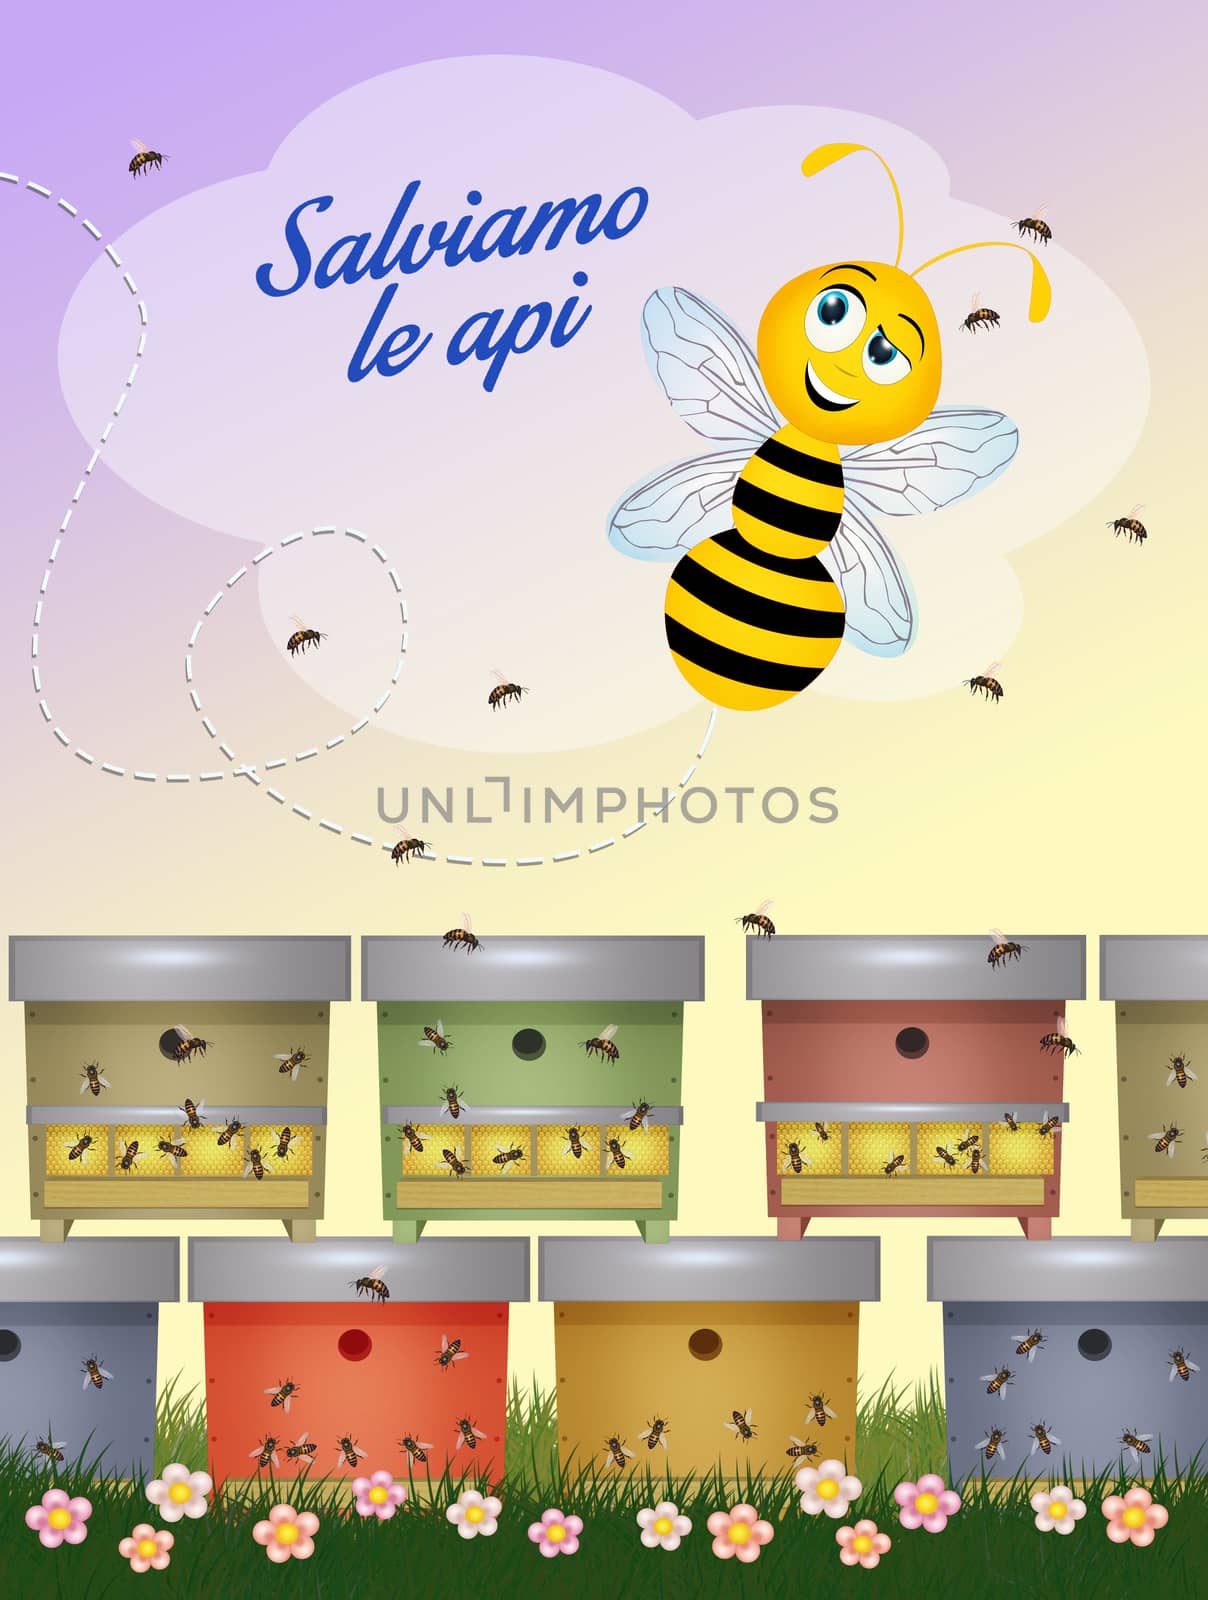 postcard for saving bees by adrenalina